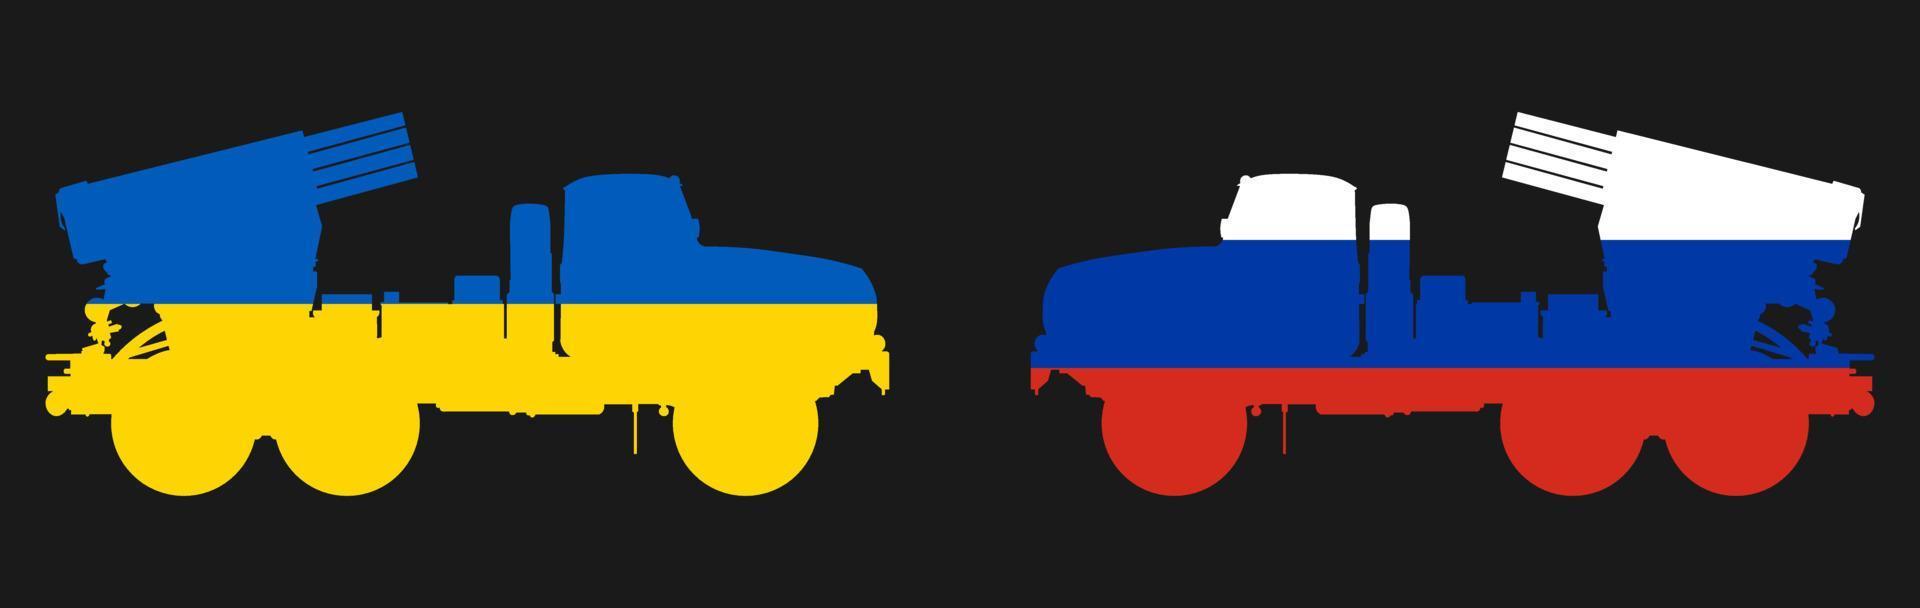 Ukraina vs Ryssland militär konflikt mellan ukrainskt och ryskt land och nation vektor